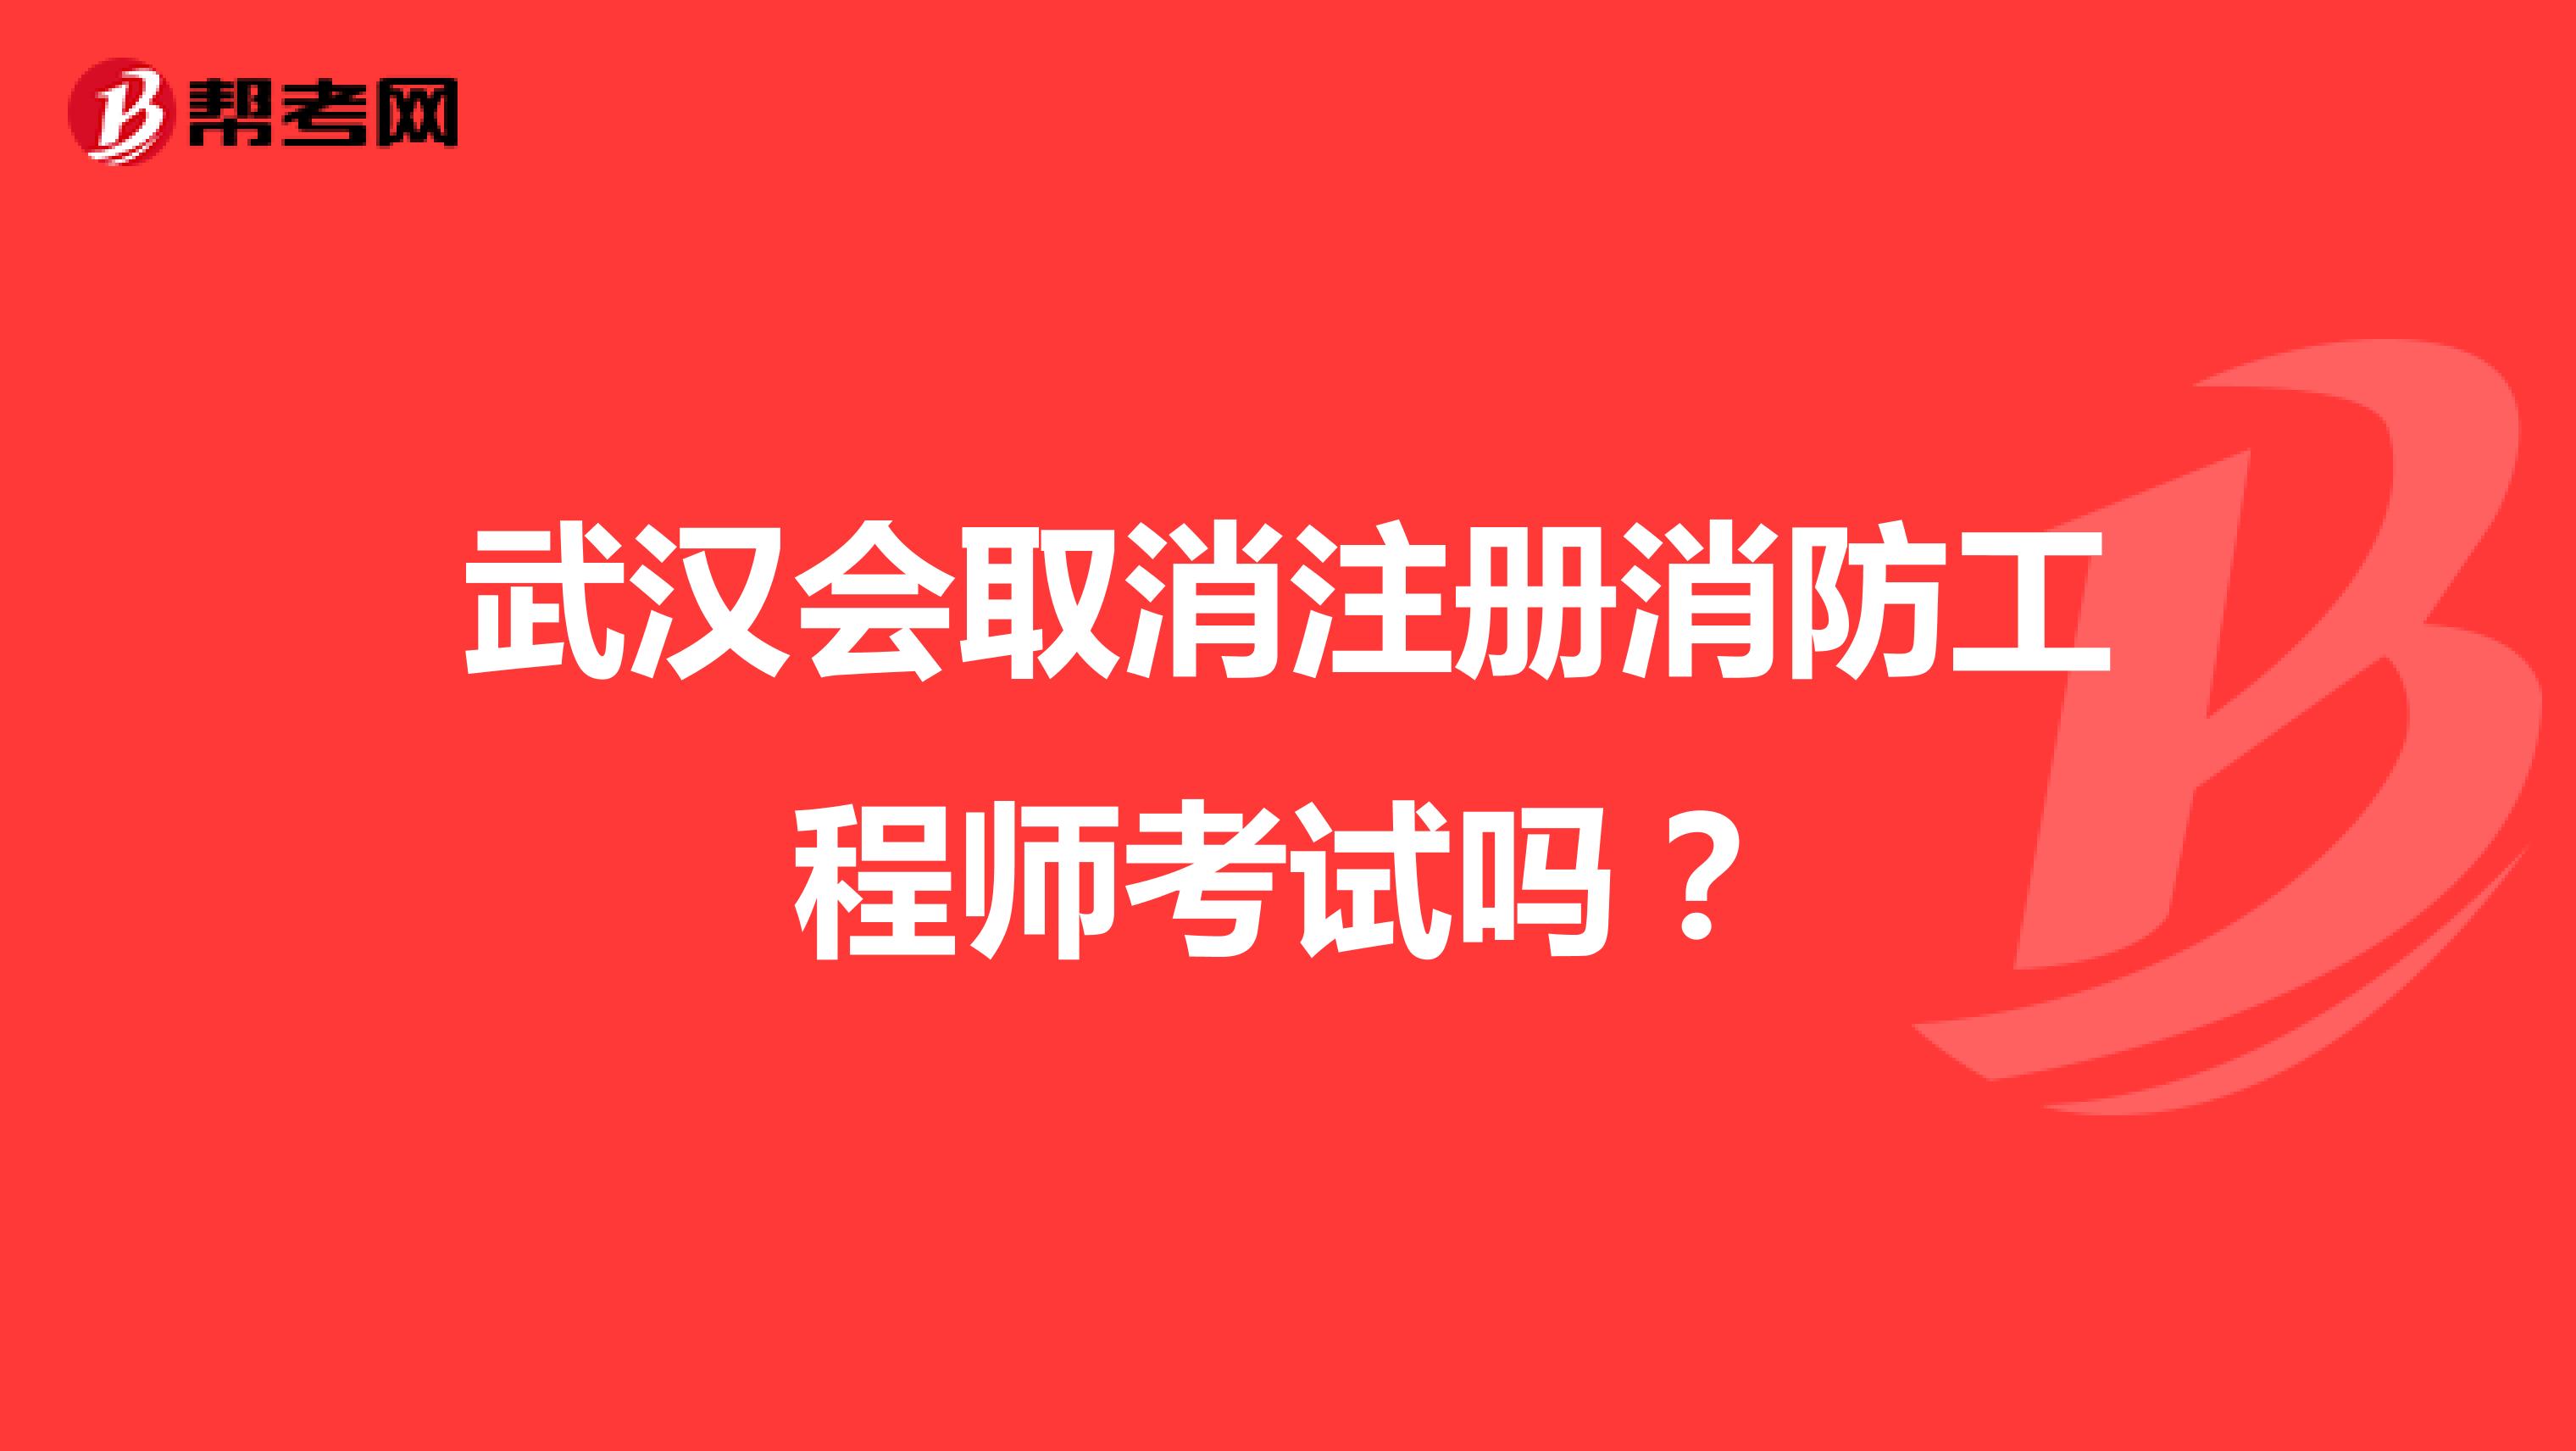 武汉会取消注册消防工程师考试吗？